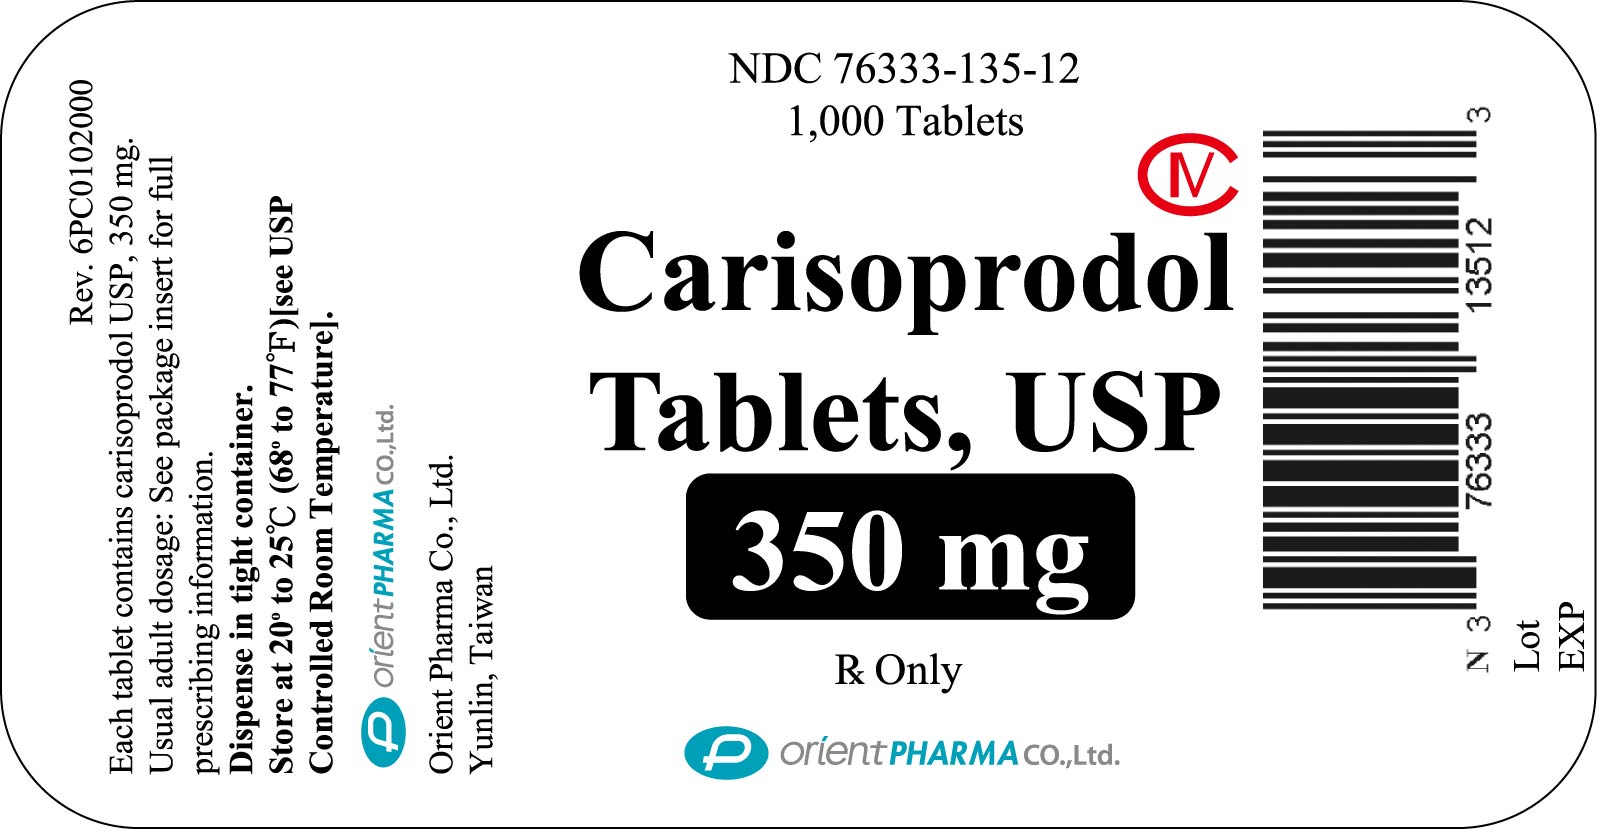 1,000 Tablets Bottle Label